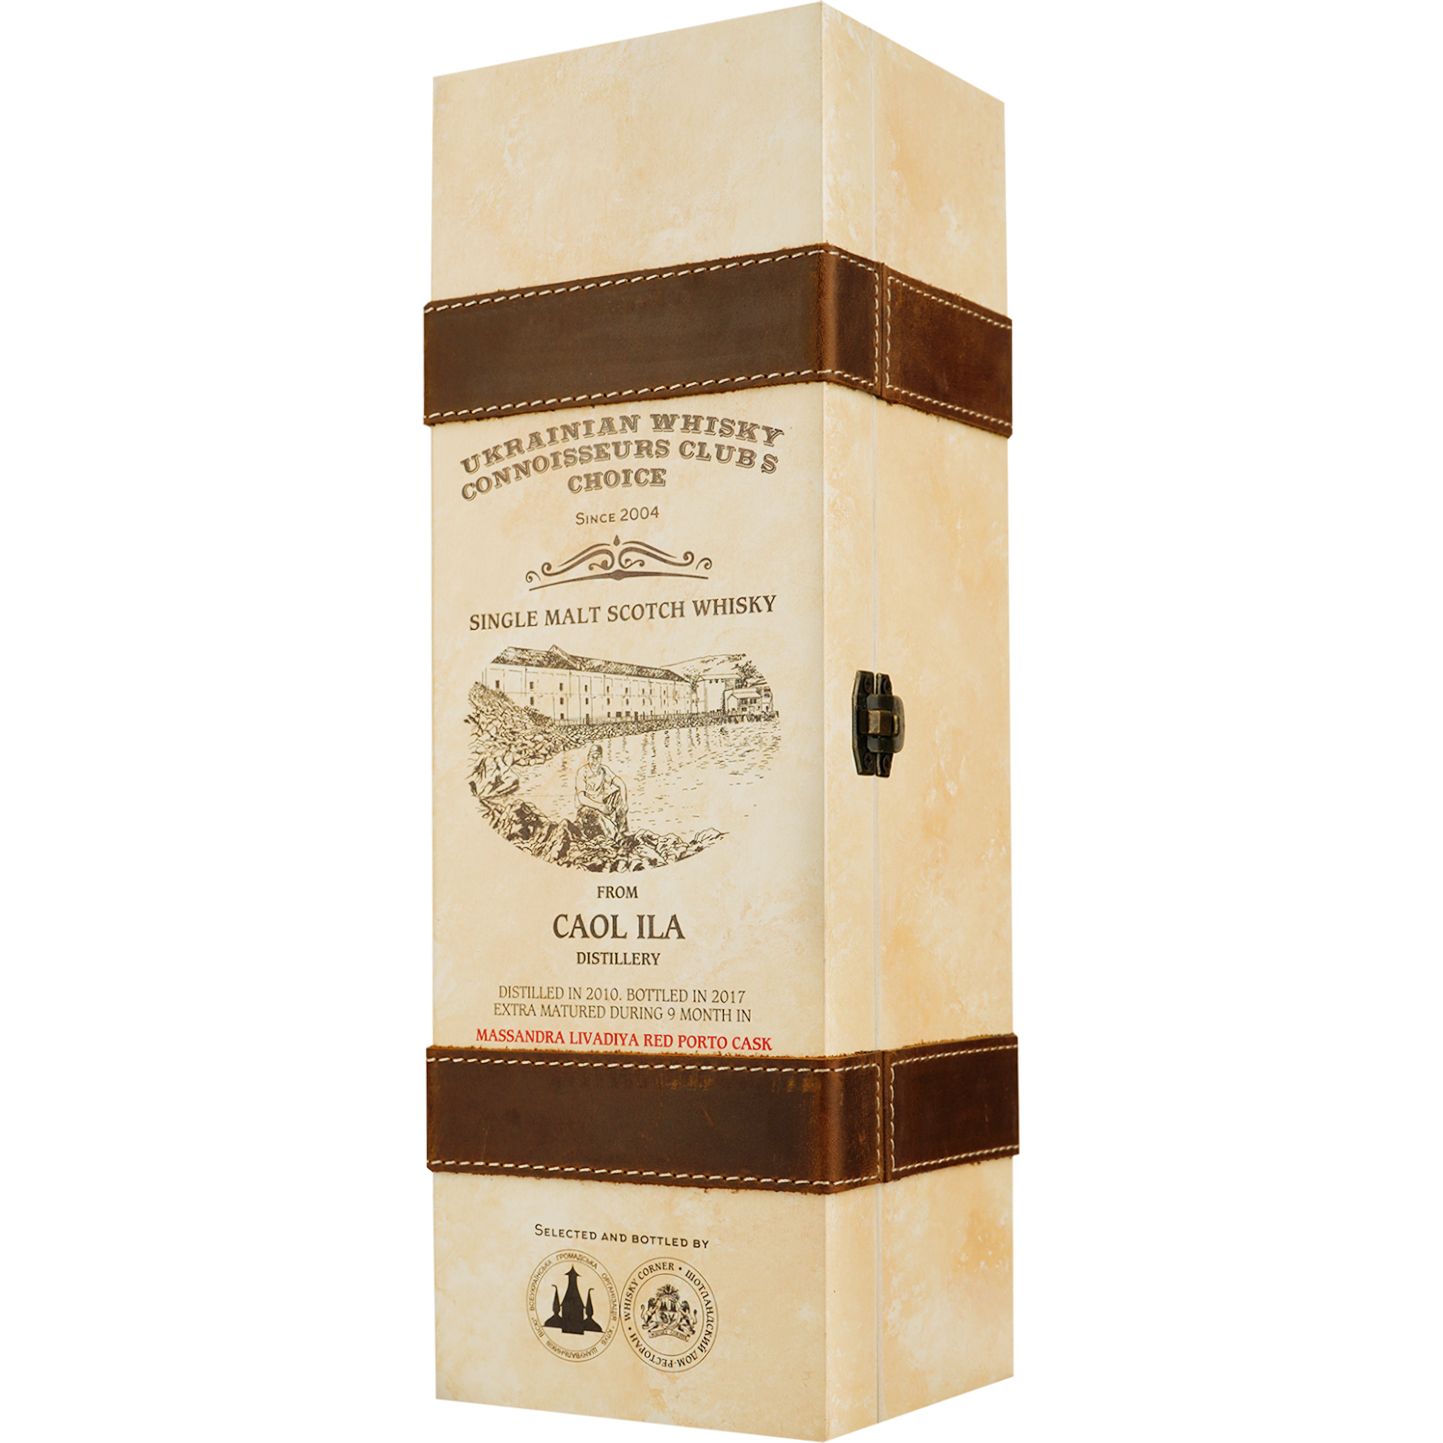 Віскі Caol Ila 7 Years Old Port Livadia Single Malt Scotch Whisky, у подарунковій упаковці, 58%, 0,7 л - фото 3